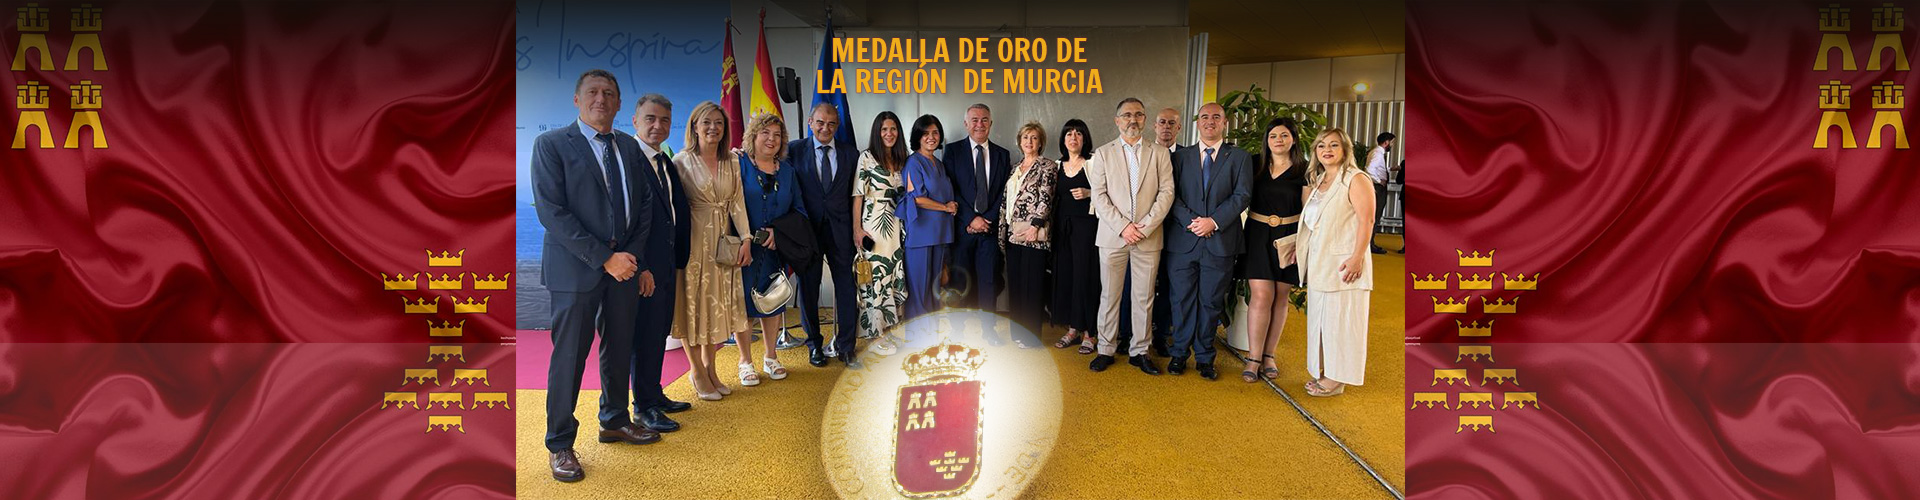 Ucoerm recibe la Medalla de Oro del Consejo de Gobierno de la Región de Murcia, por el reconocimiento a cuarenta años de trabajo y dedicación en favor del cooperativismo de enseñanza.